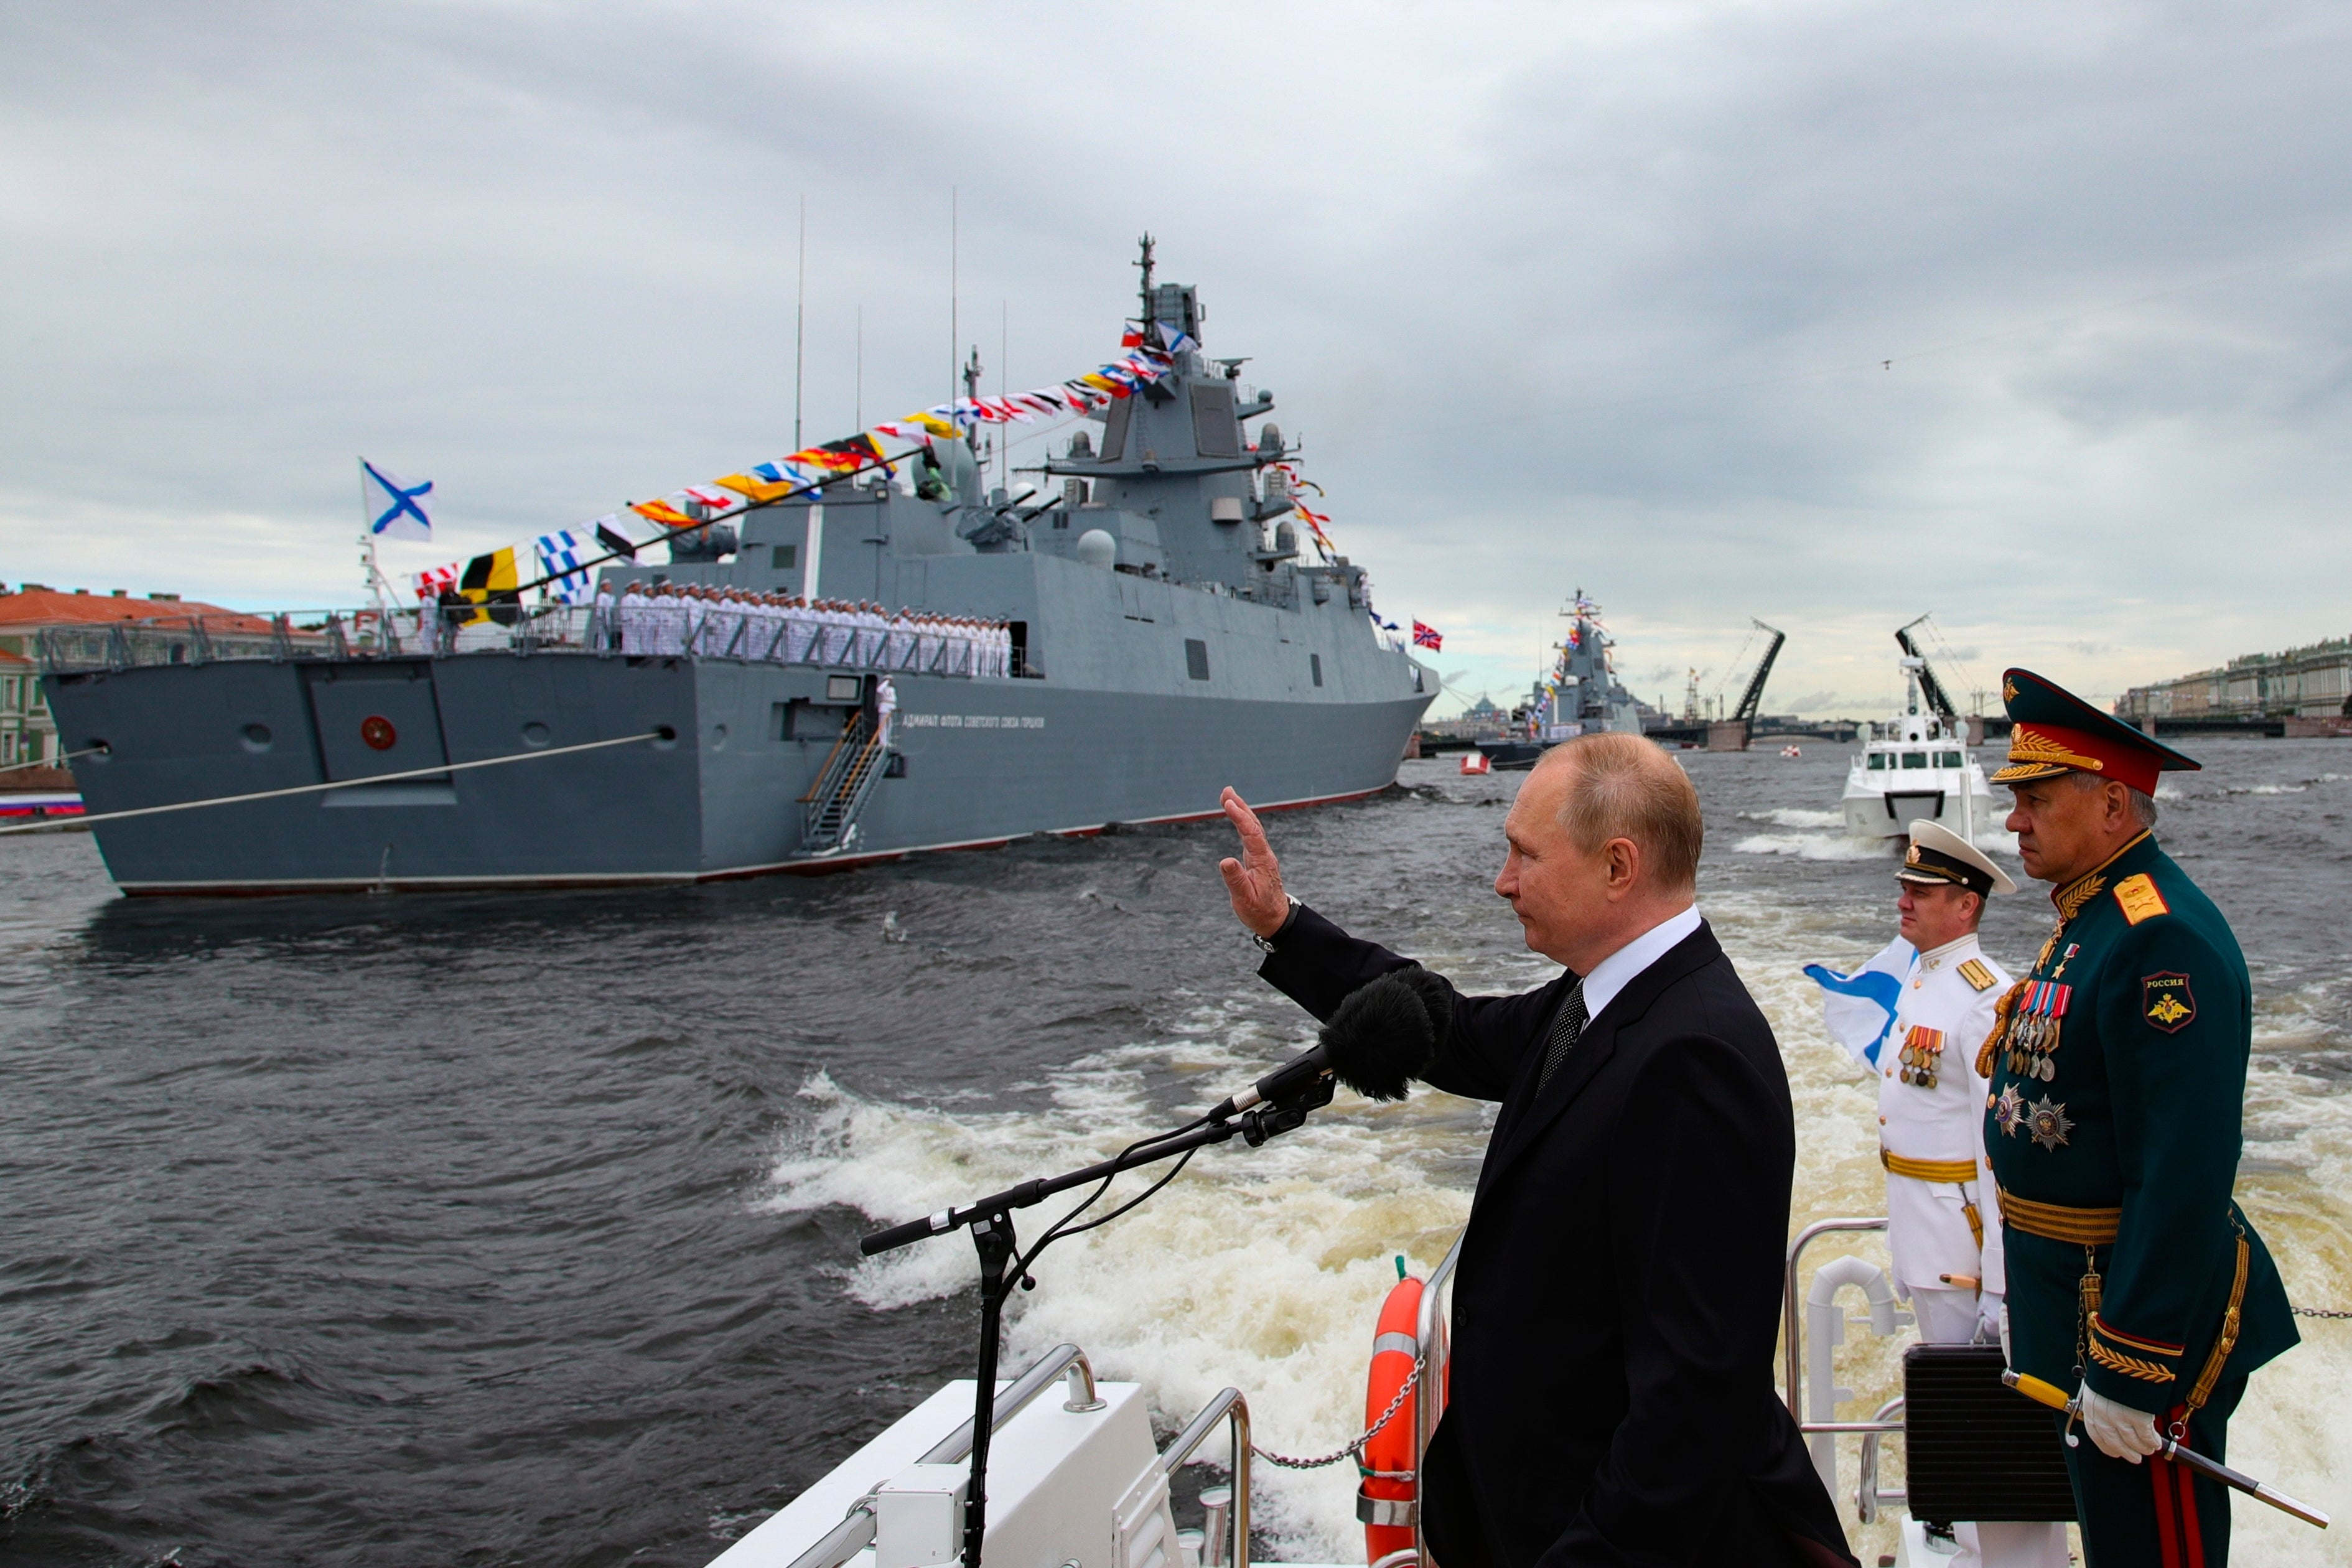 El presidente Putin pasa revista a los buques de guerra antes de un desfile naval en San Petersburgo el verano pasado